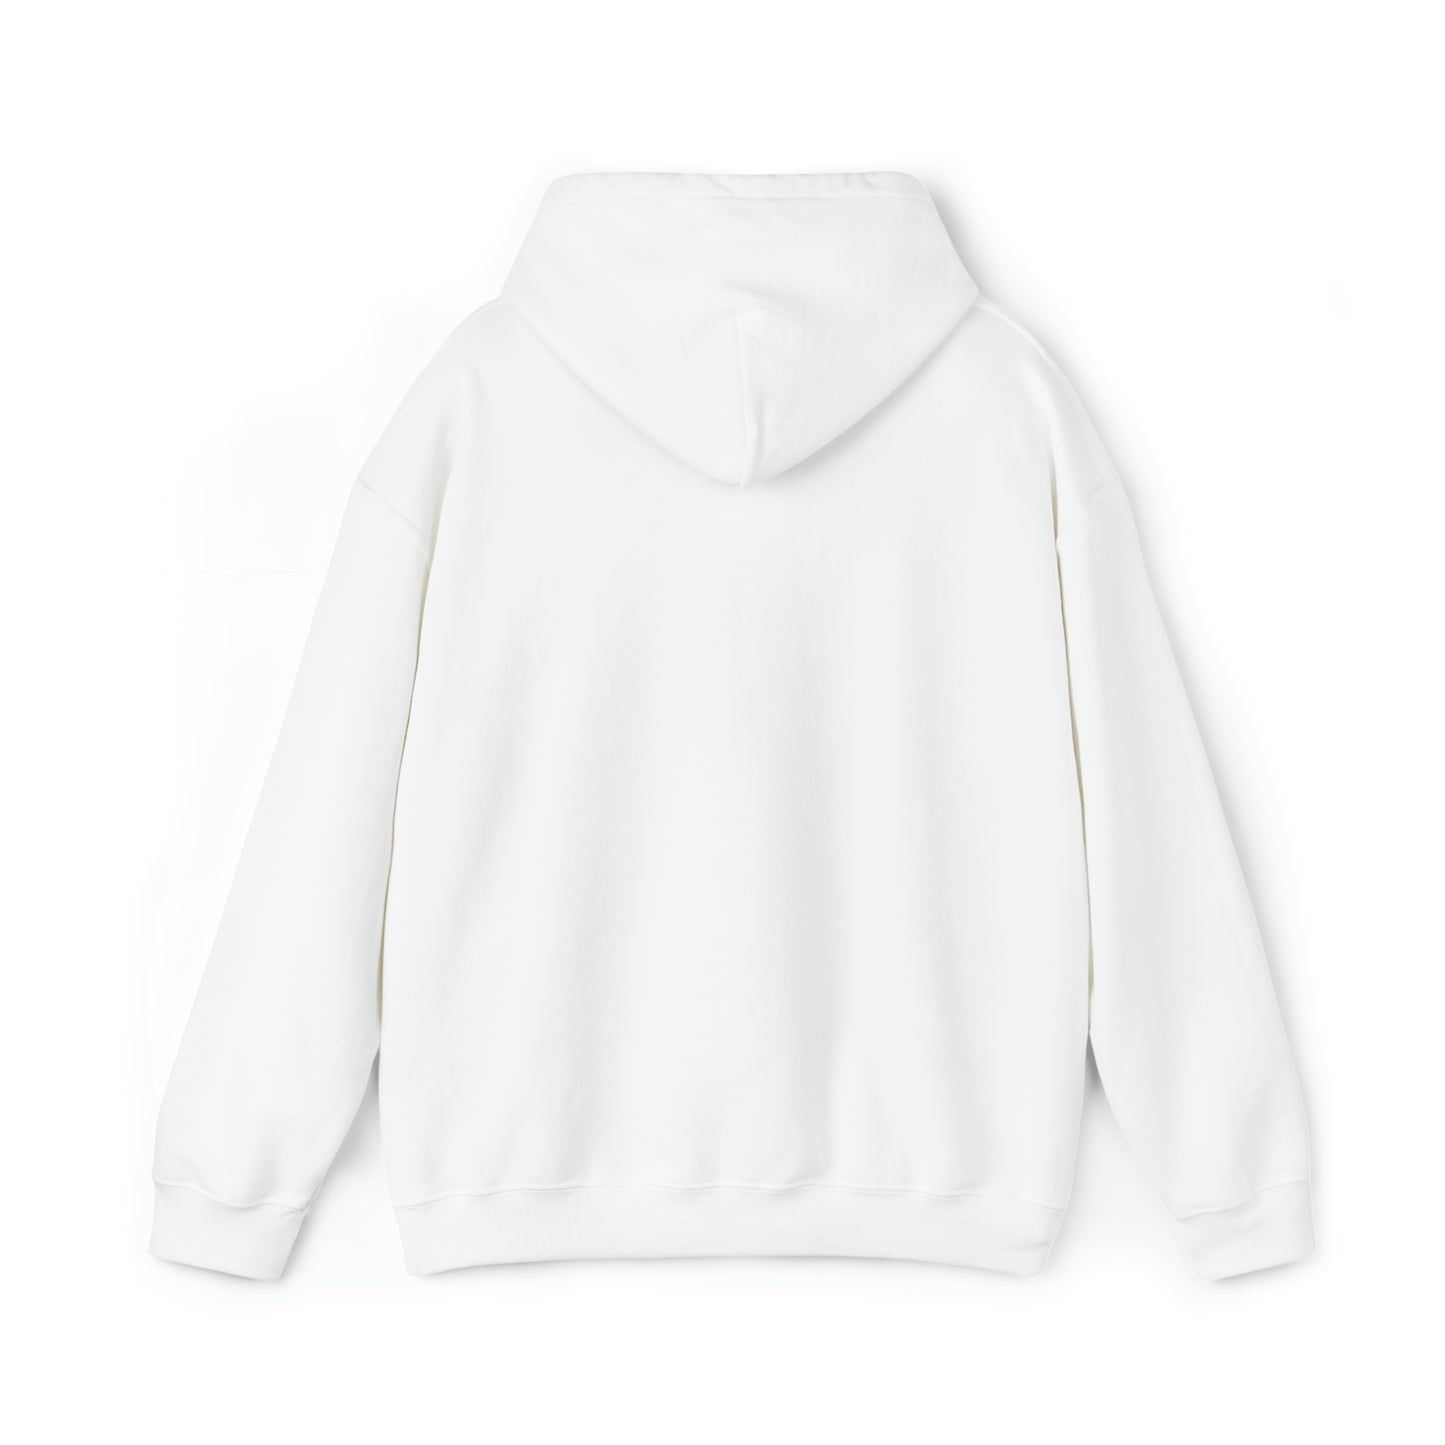 Flower Dij - Unisex Heavy Blend™ Hooded Sweatshirt